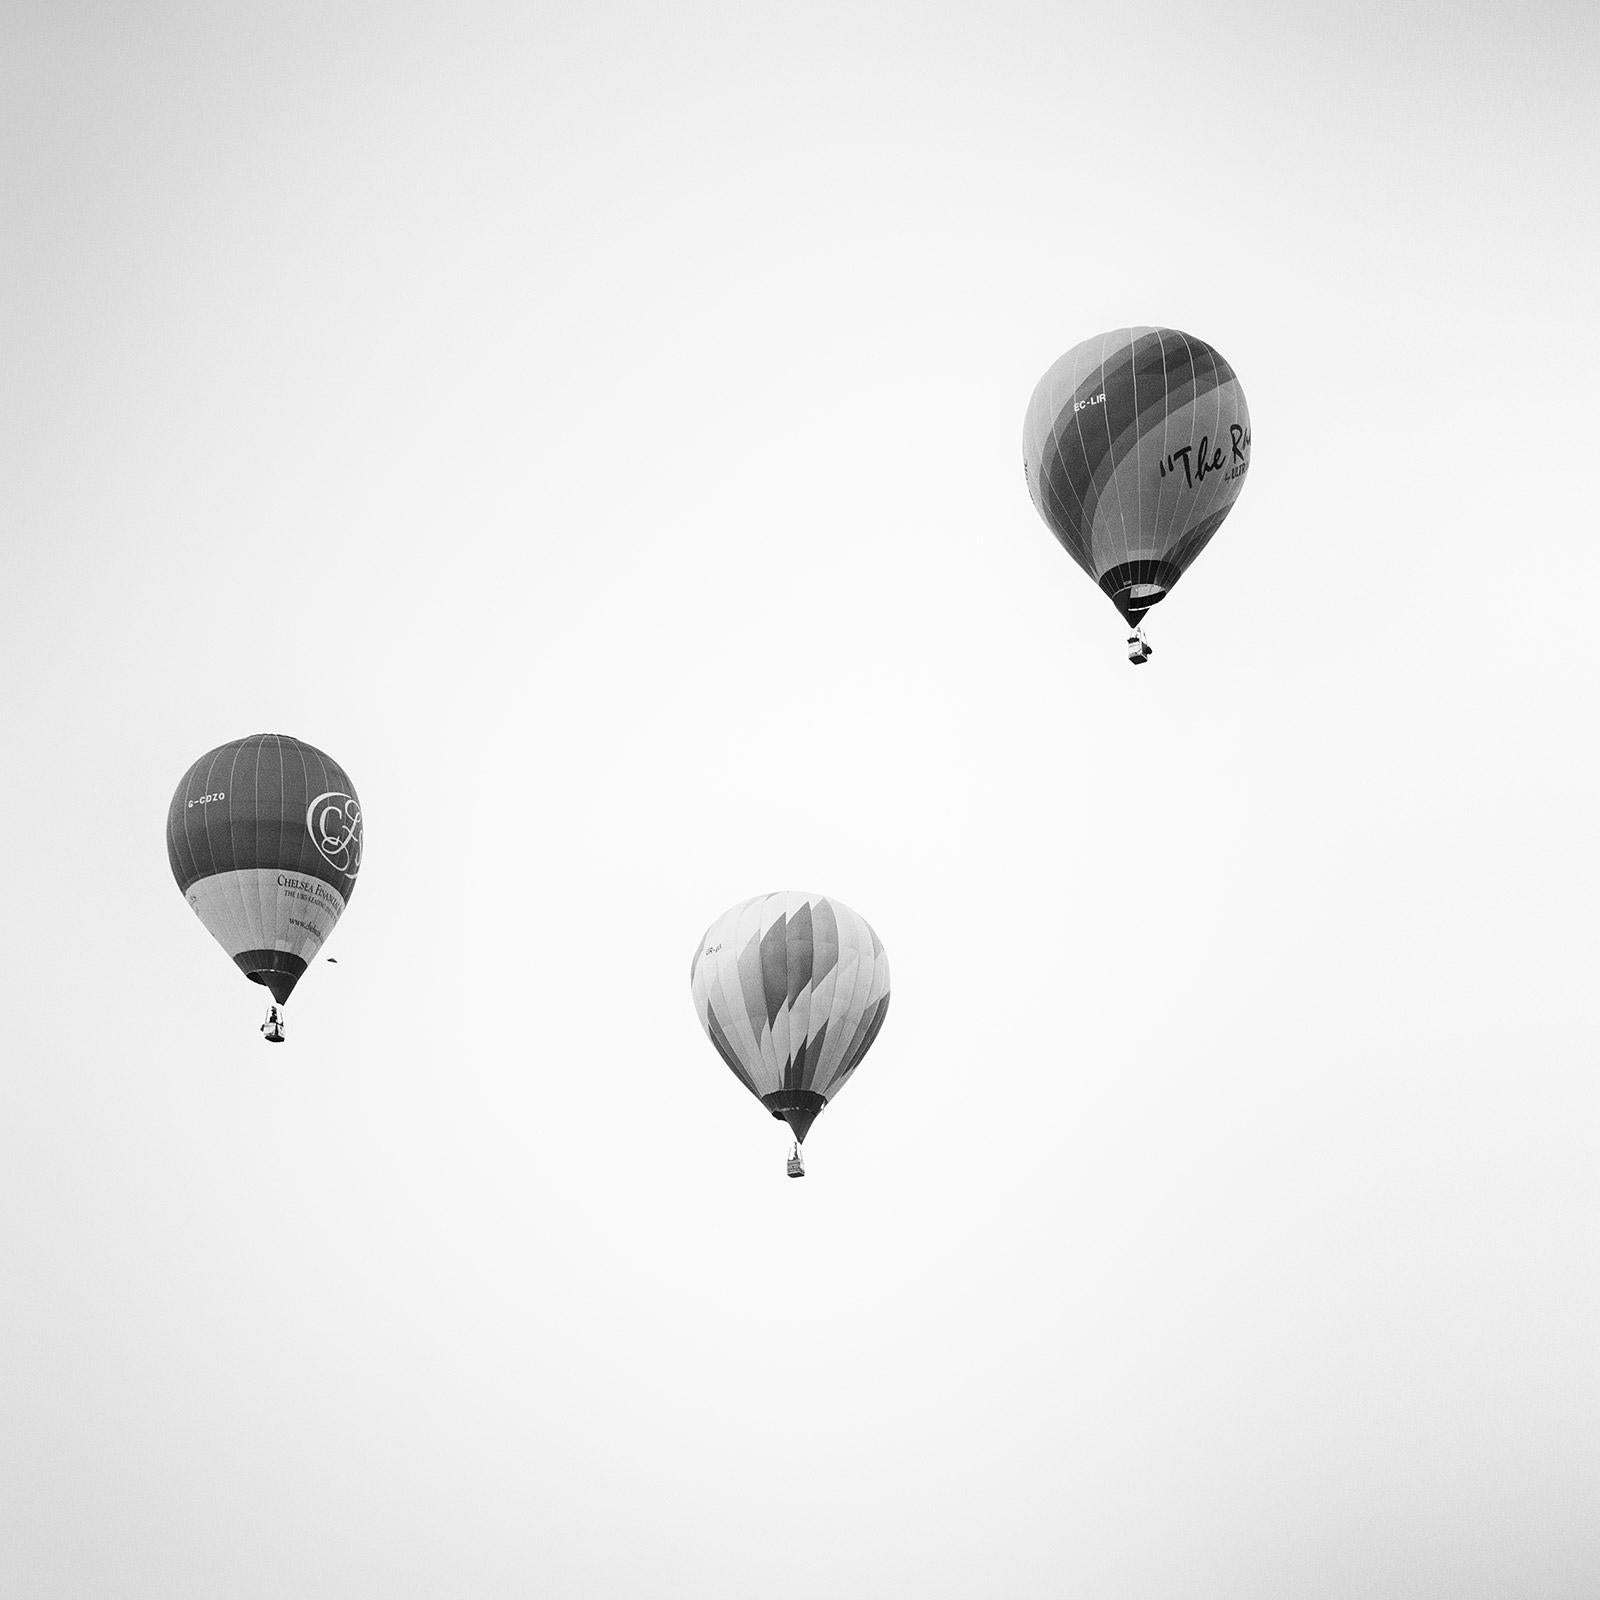 Gerald Berghammer Black and White Photograph – Hot Air Ballon, Championship, minimalistische Schwarz-Weiß-Fotografie, Landschaft